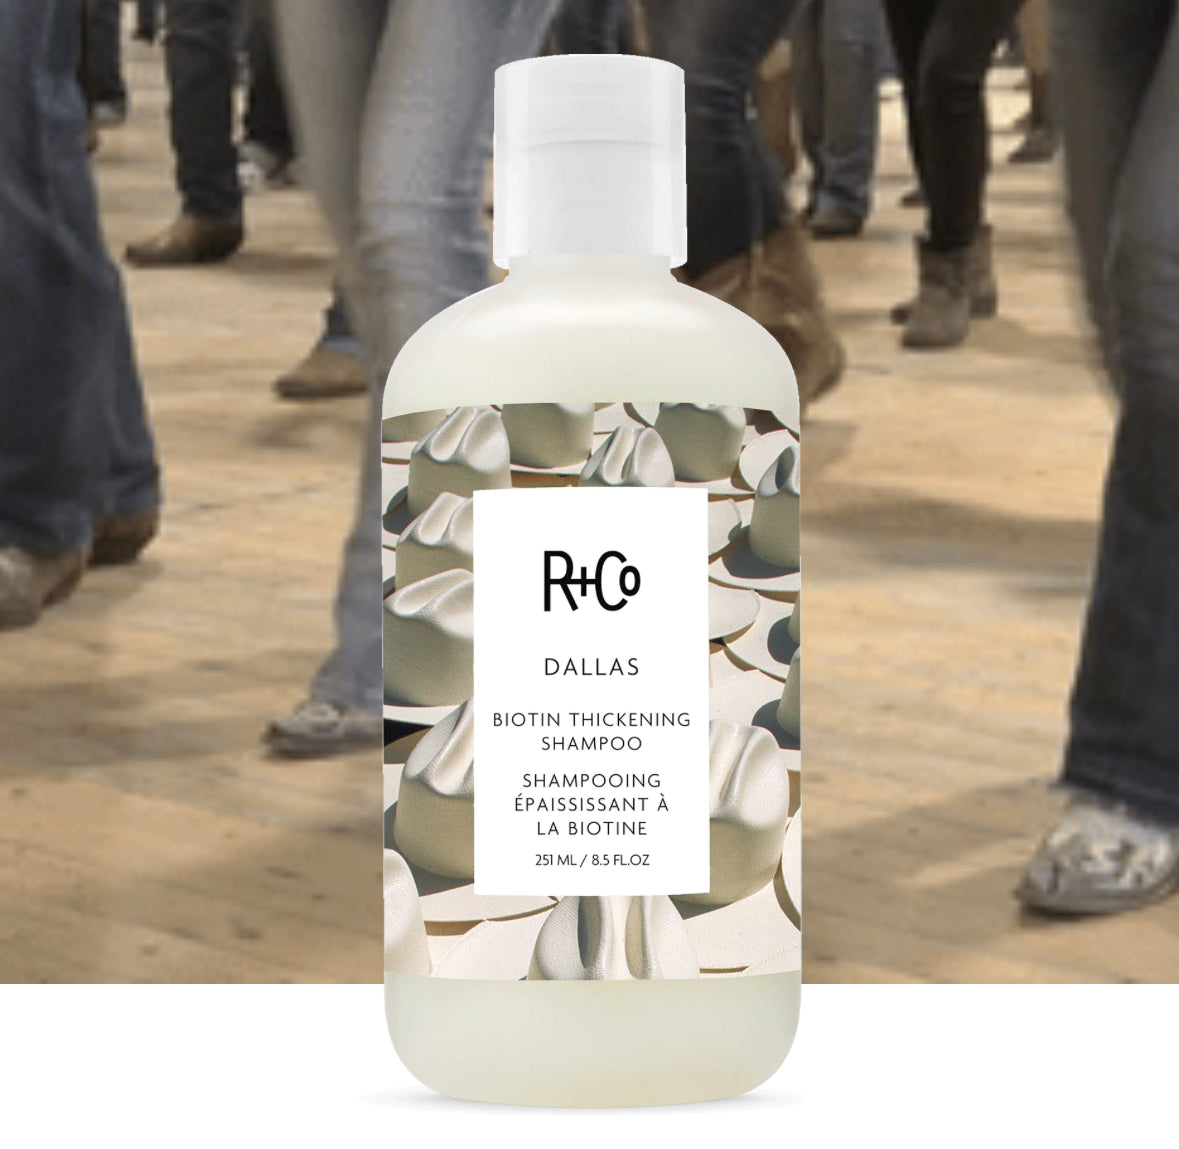 R+Co Dallas biotin thickening shampoo